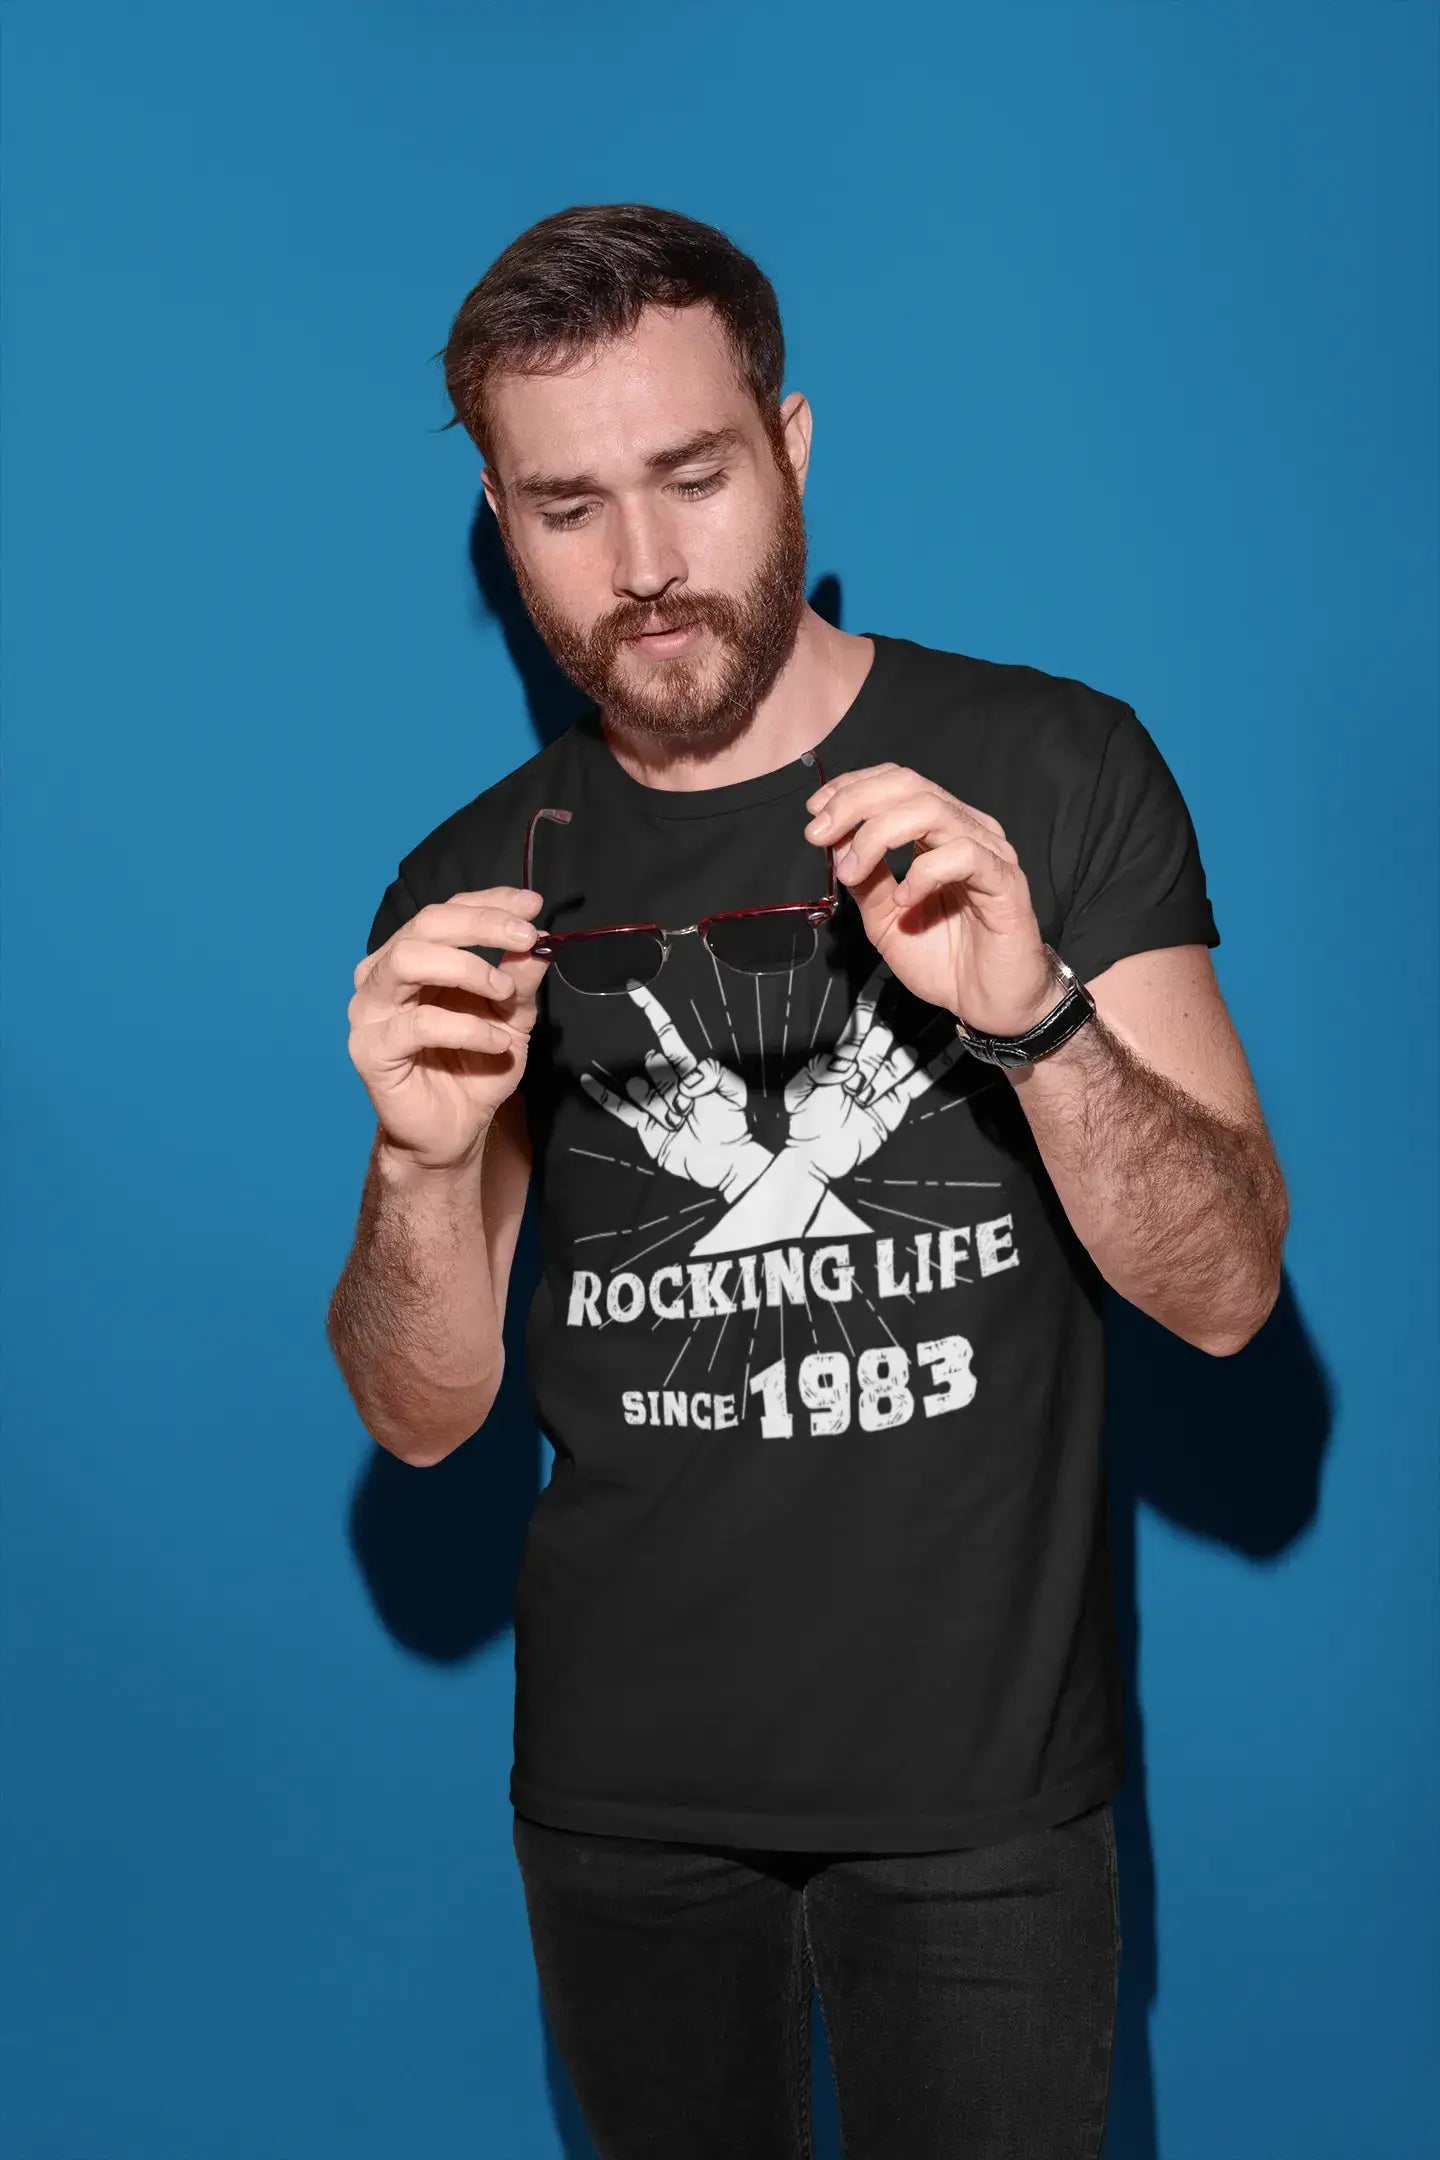 Rocking Life Since 1983 Herren T-Shirt Schwarz Geburtstagsgeschenk 00419